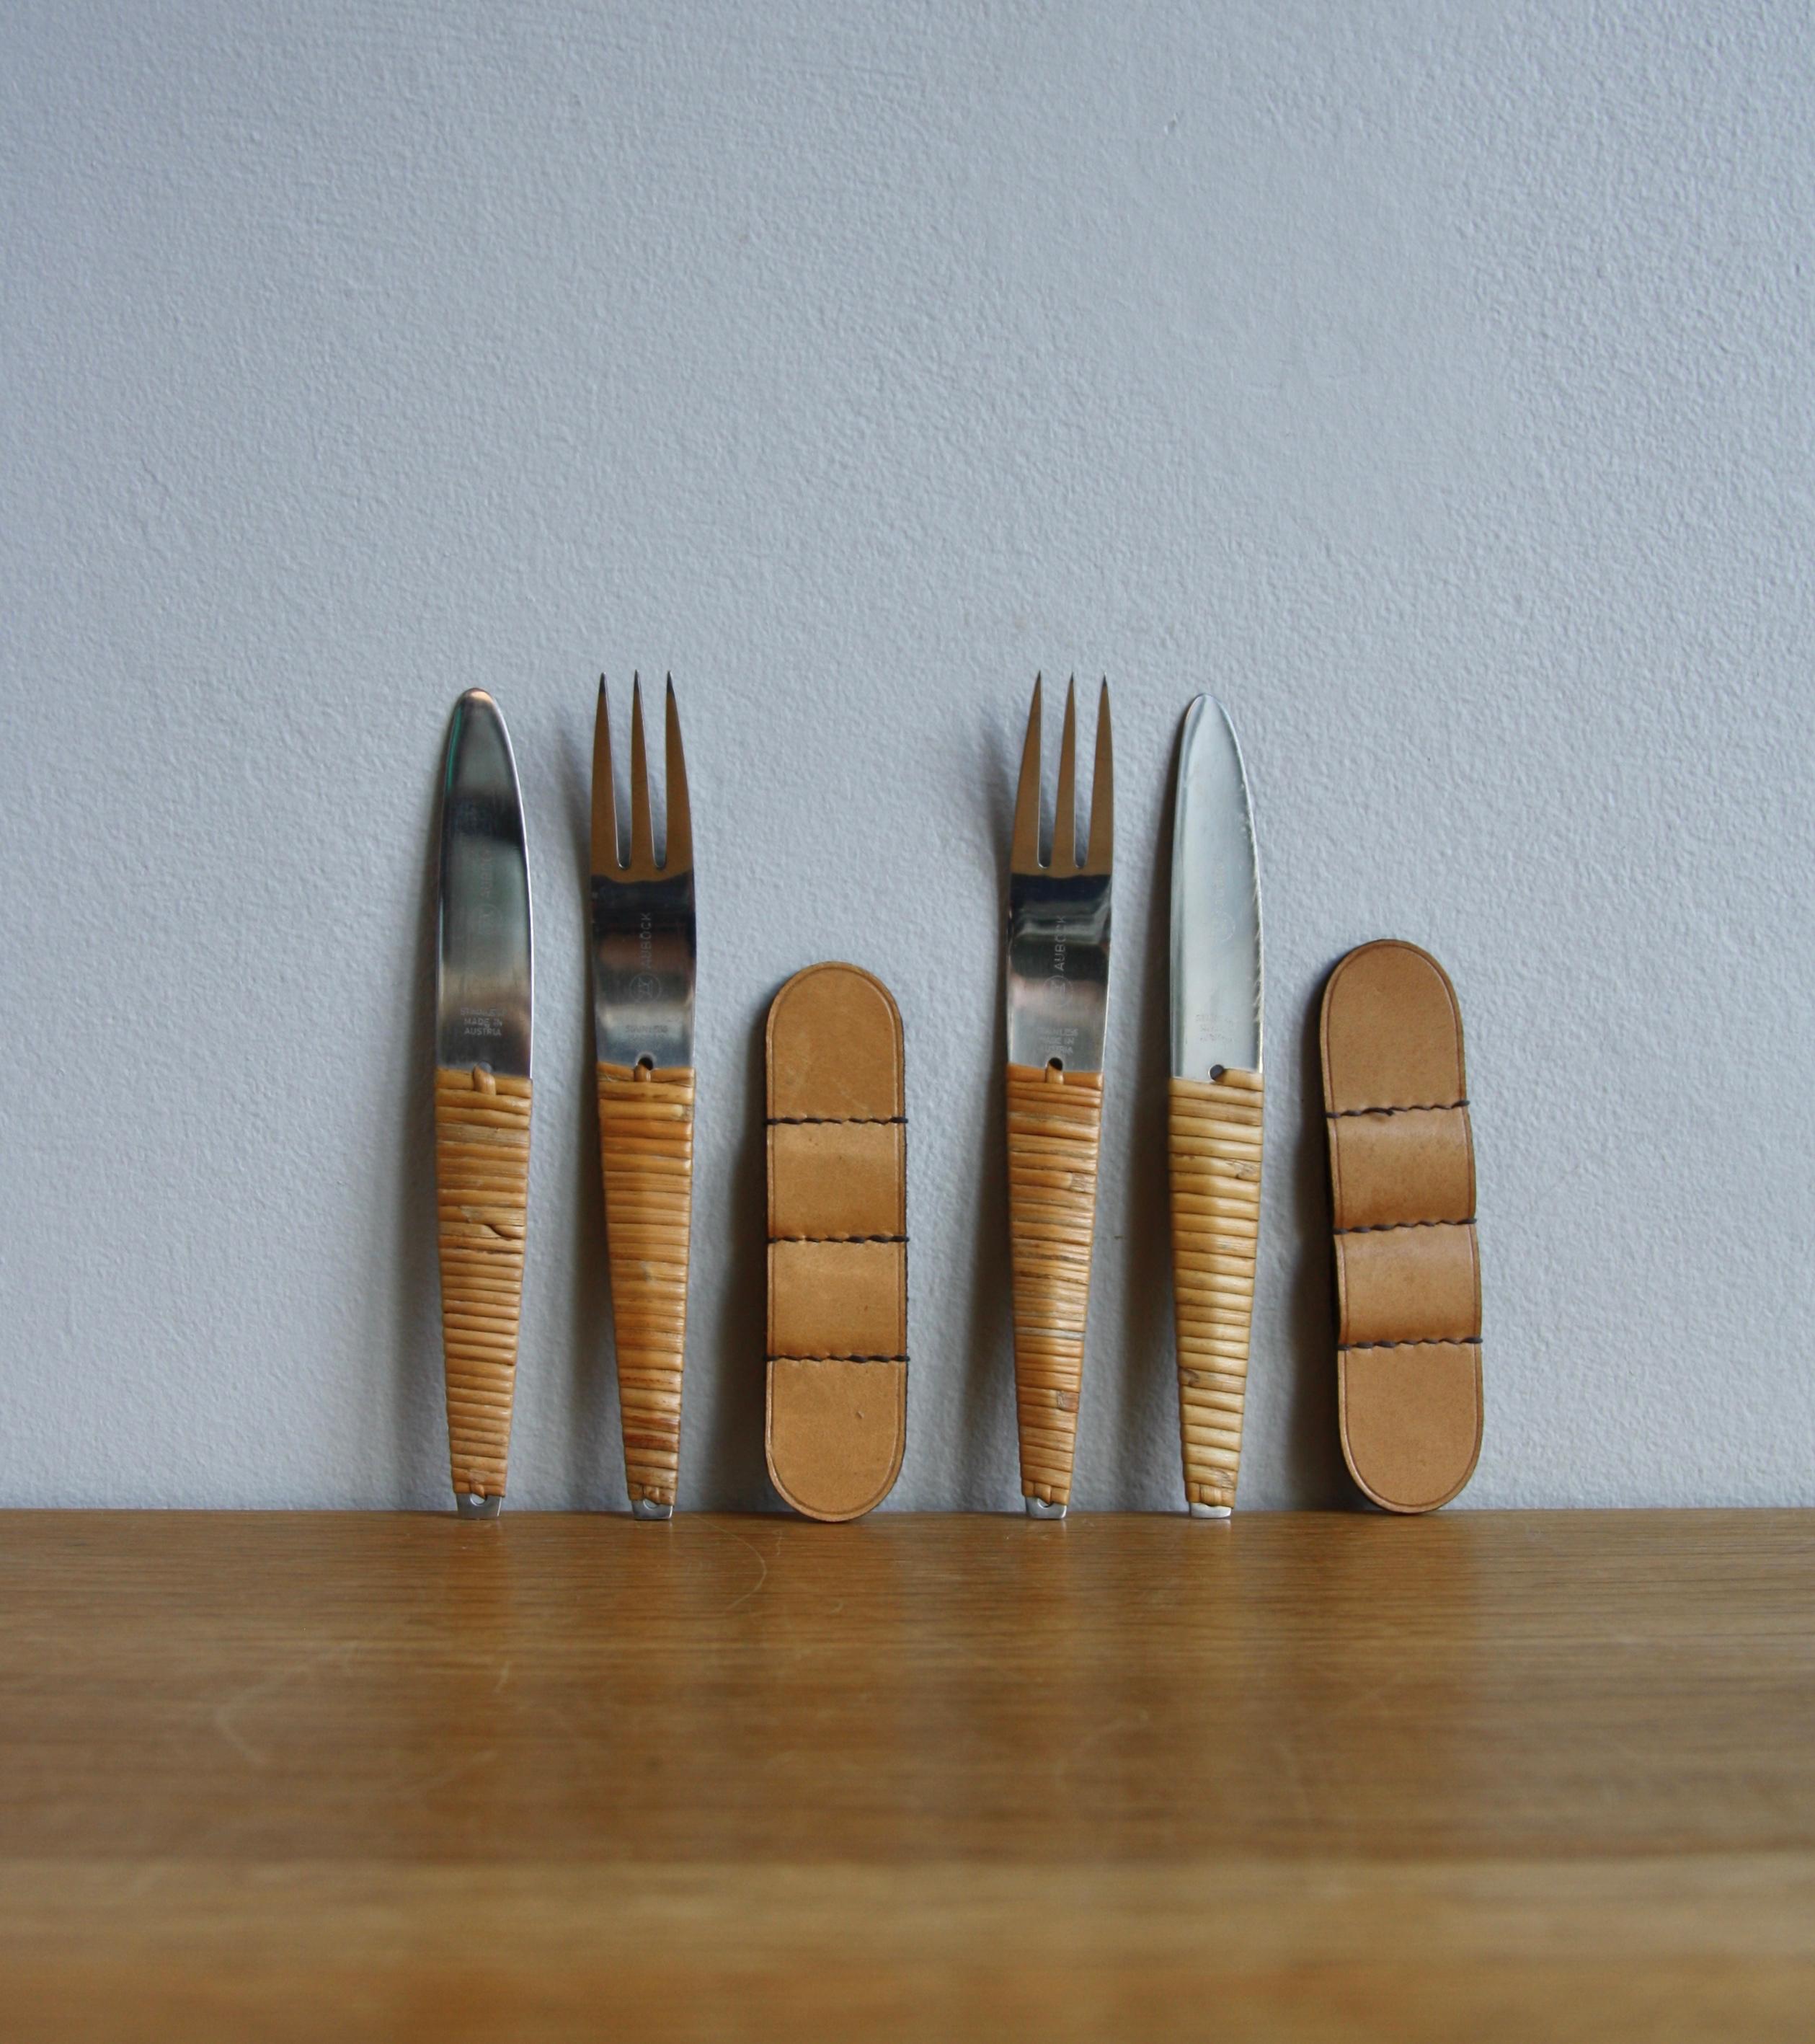 Deux ensembles vintage de couteaux et fourchettes, numéro de modèle #4244, par l'atelier Auböck, Vienne, vers 1950.
Le corps des couverts est en acier inoxydable, le manche de chaque pièce est tressé avec de la canne d'osier. Chaque set est